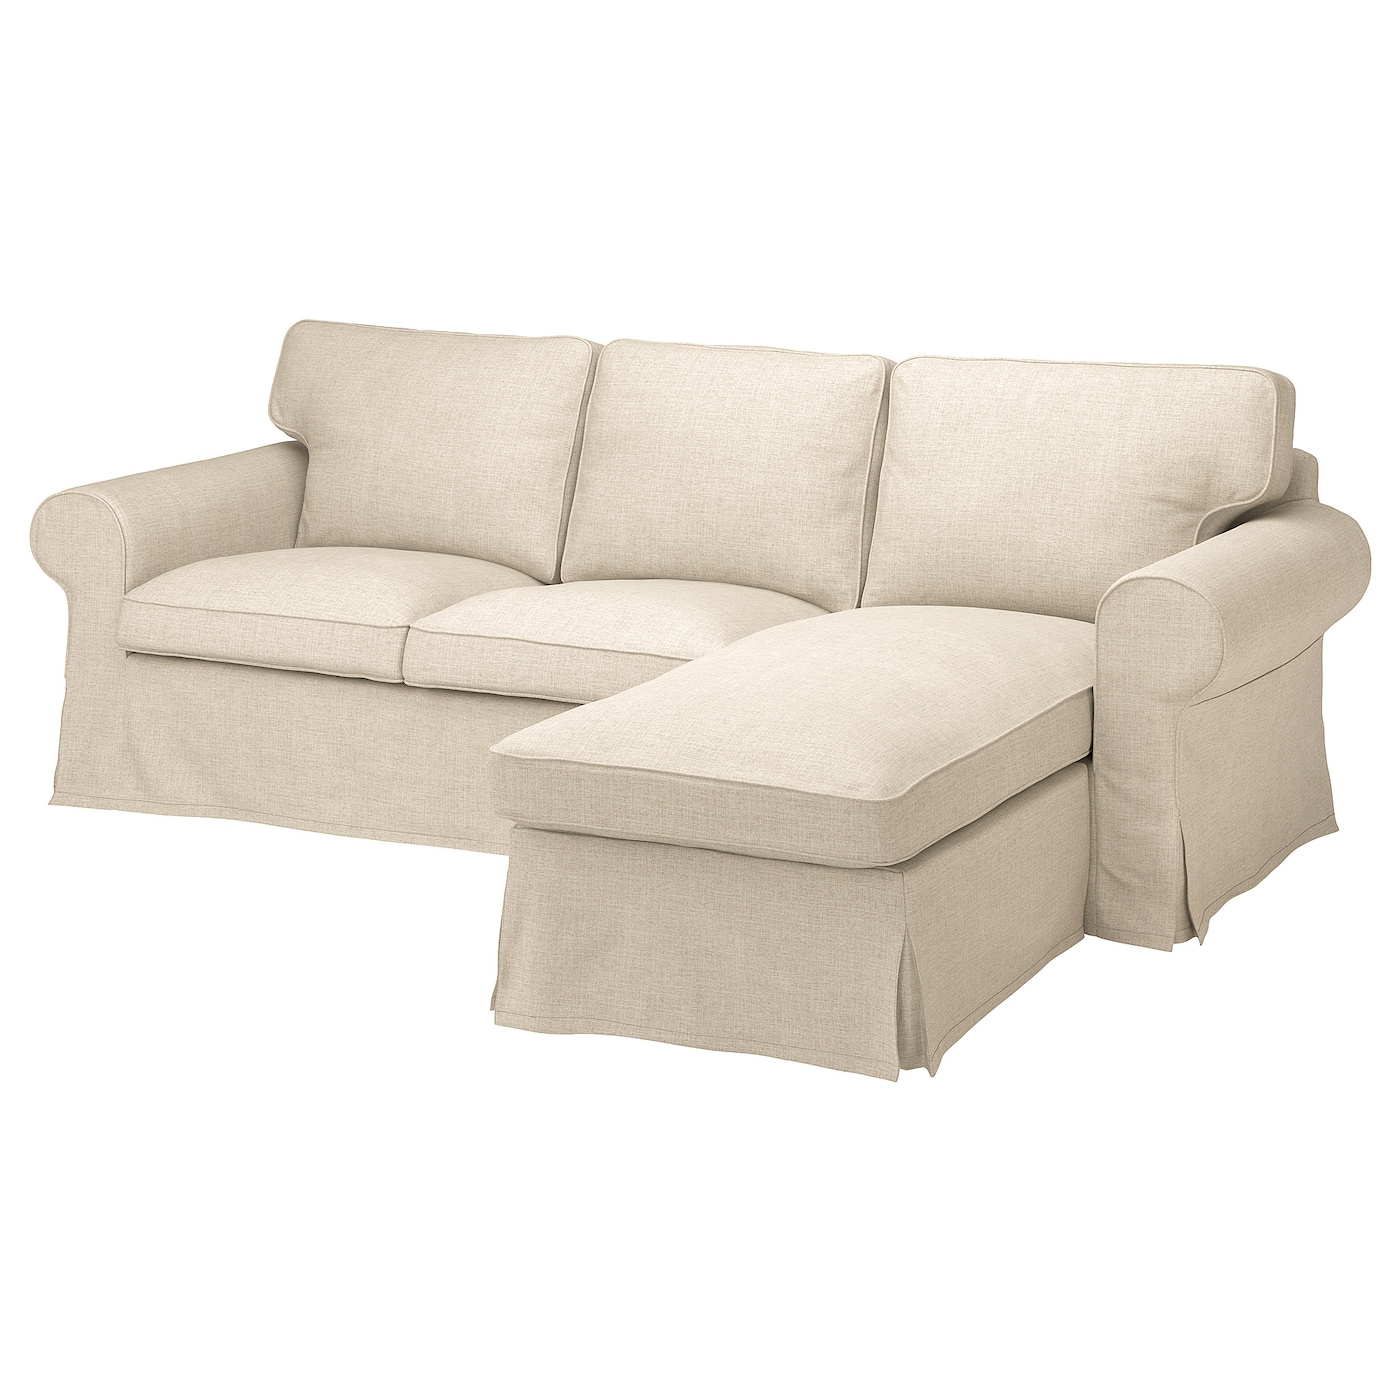 ЭКТОРП 3-местный диван+диван, Киланда светло-бежевый EKTORP IKEA